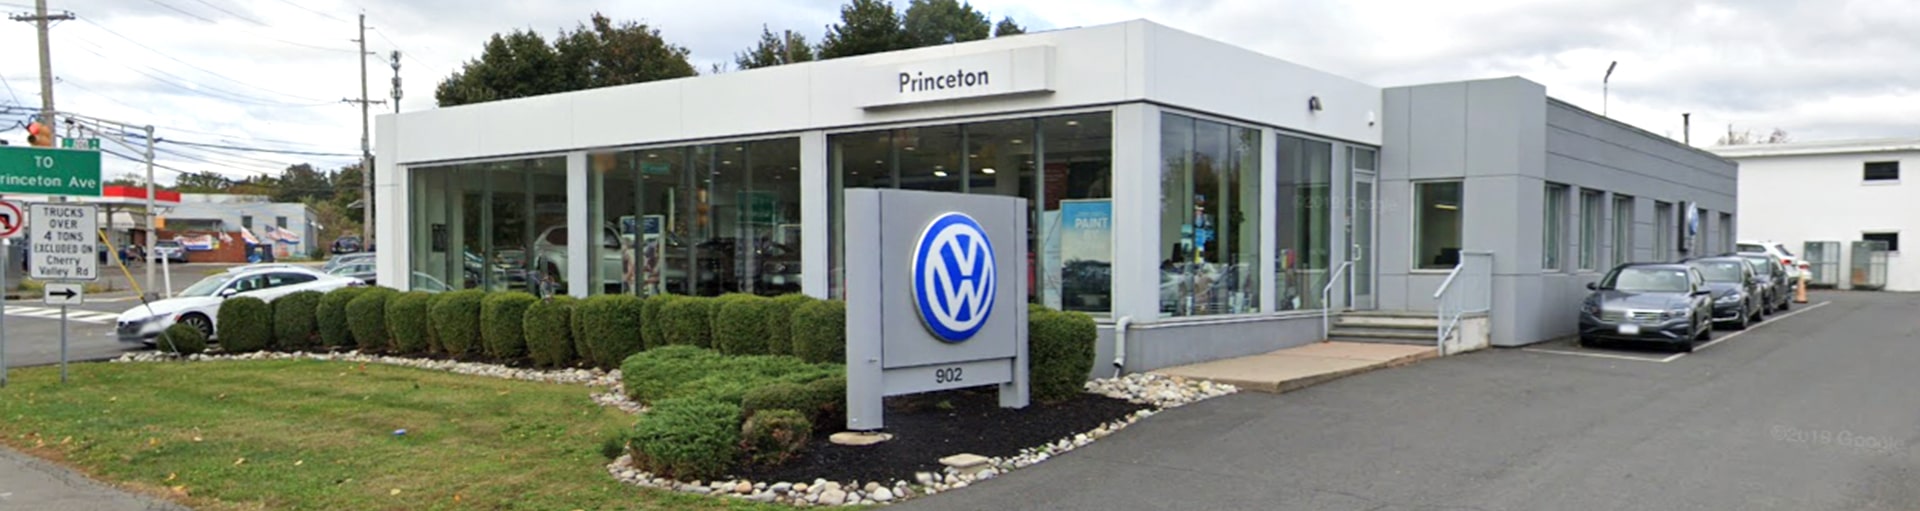 Volkswagen Princeton Service Center